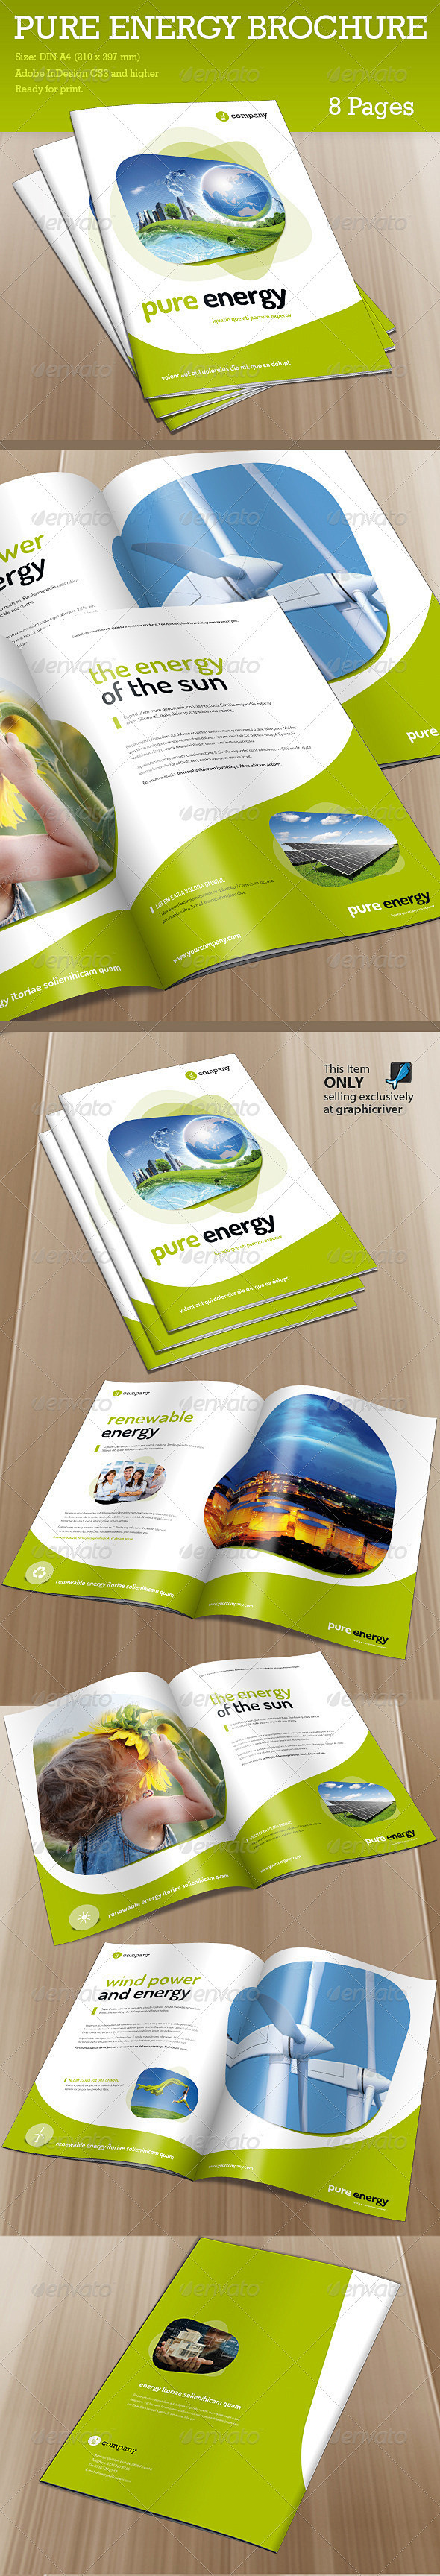 小册子纯能源 - 信息宣传册